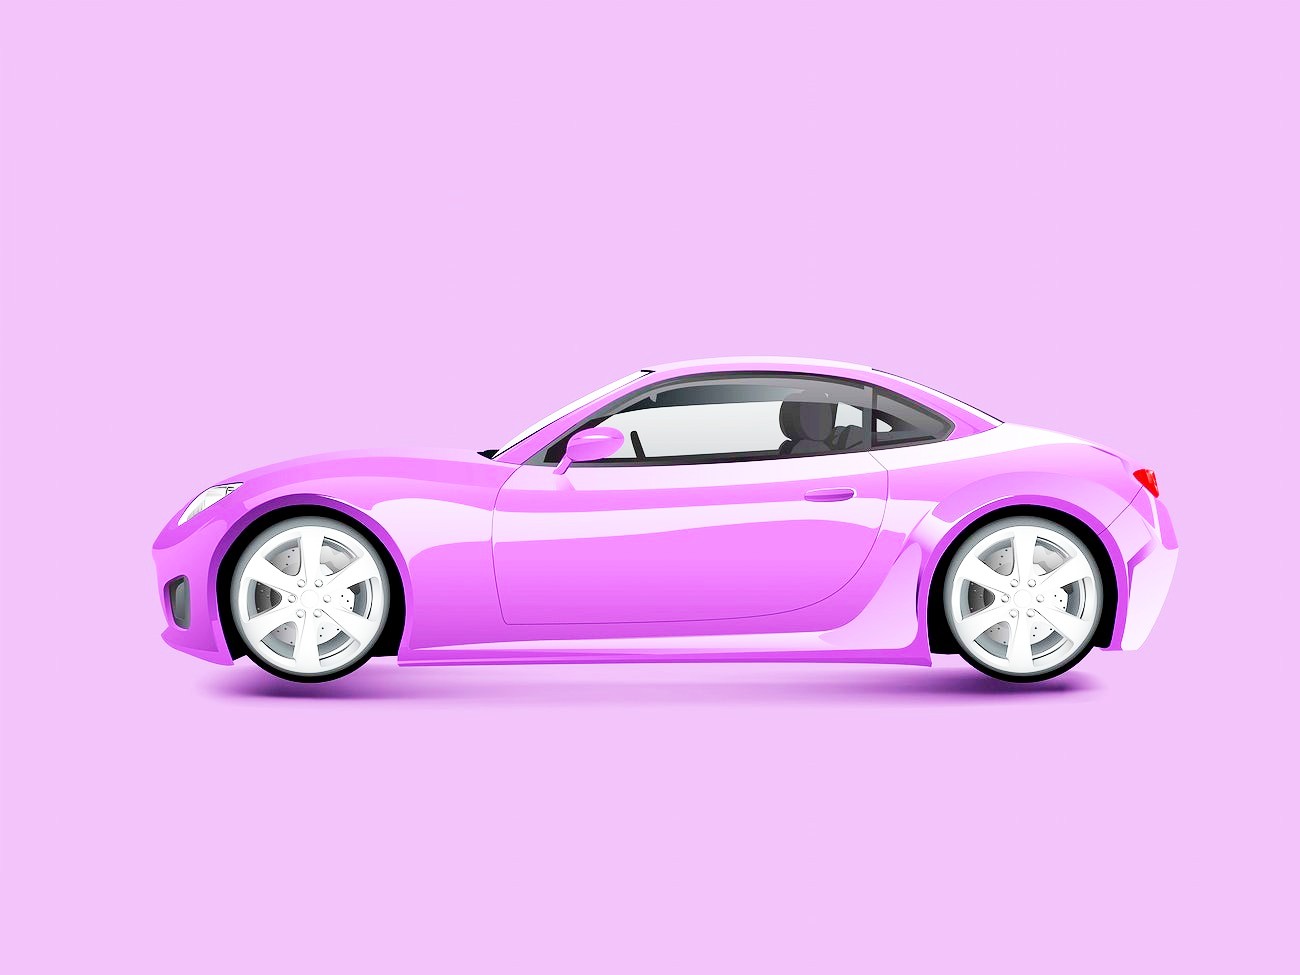 <img src="purple.jpg" alt="purple fancy car"/> 